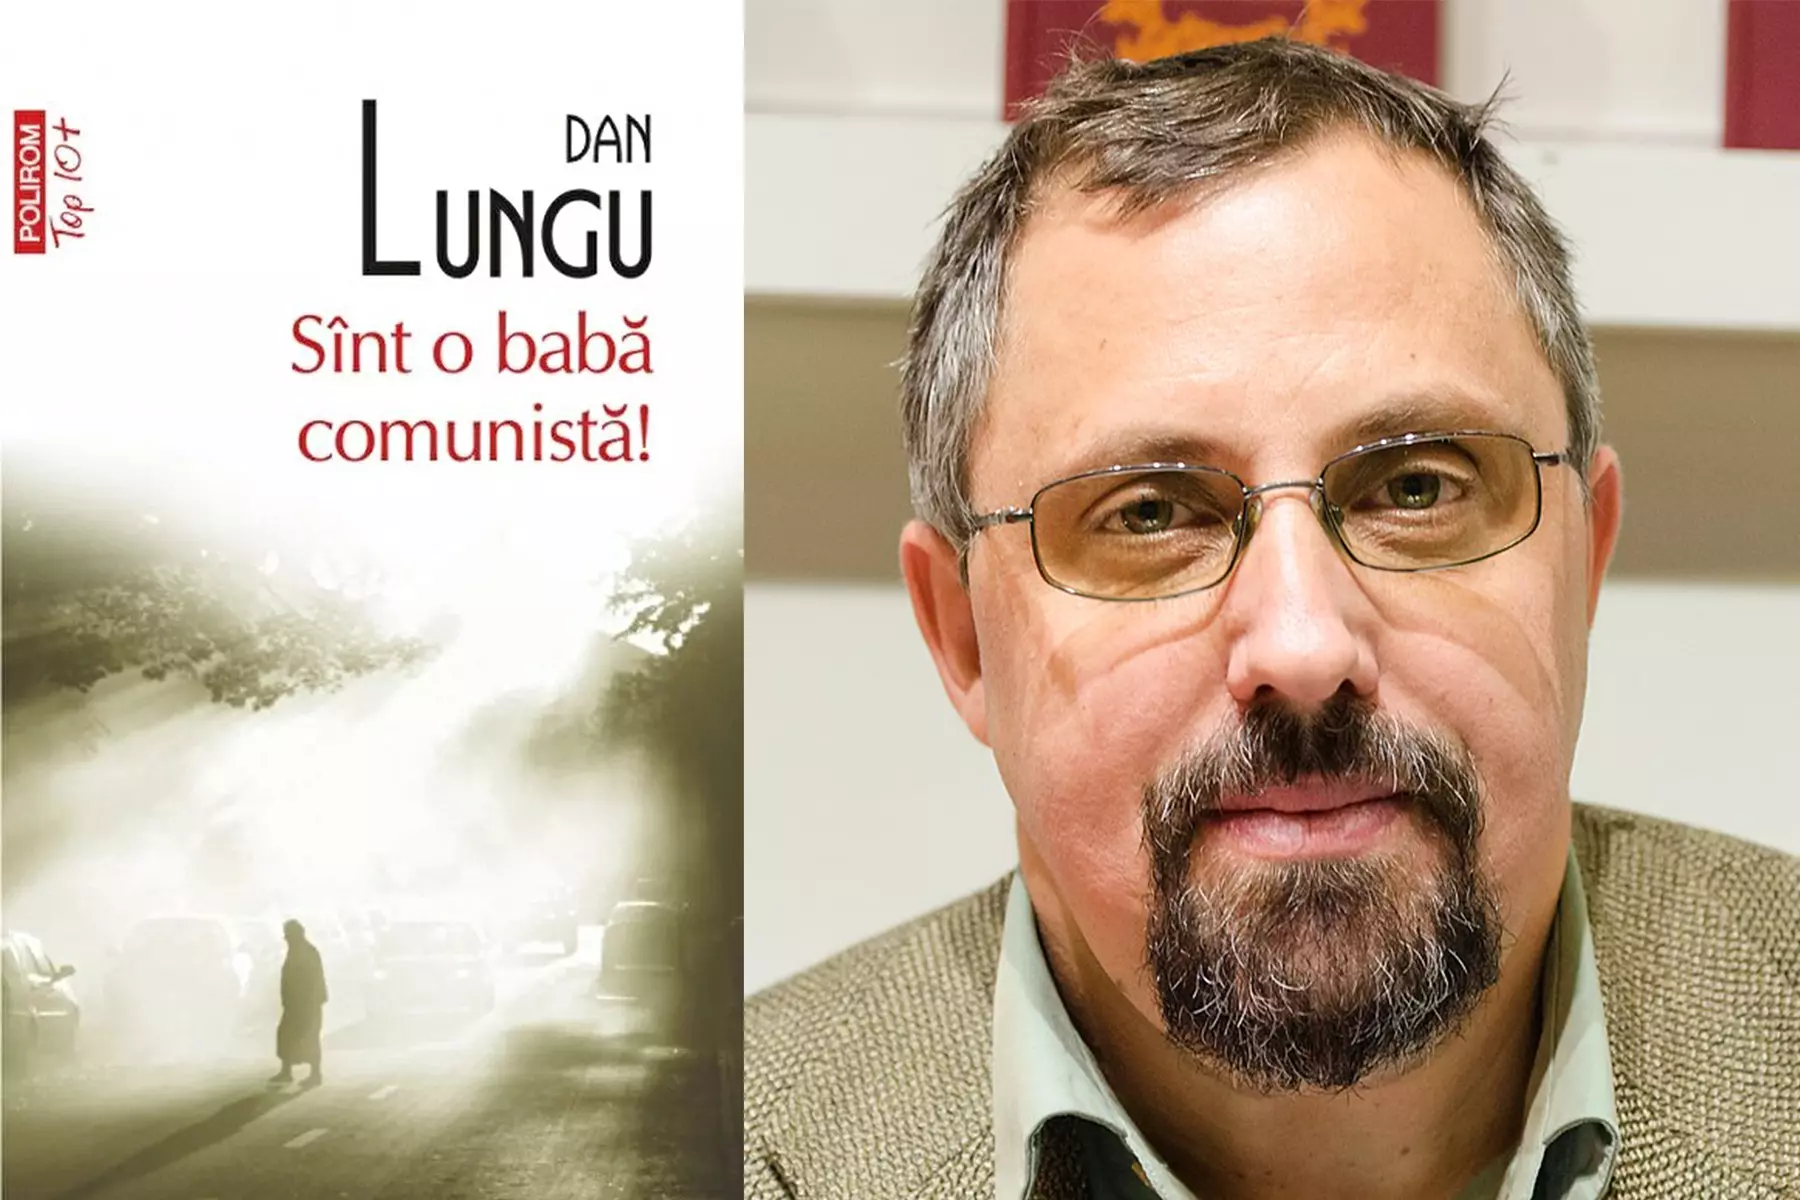 Sînt o babă comunistă! de Dan Lungu